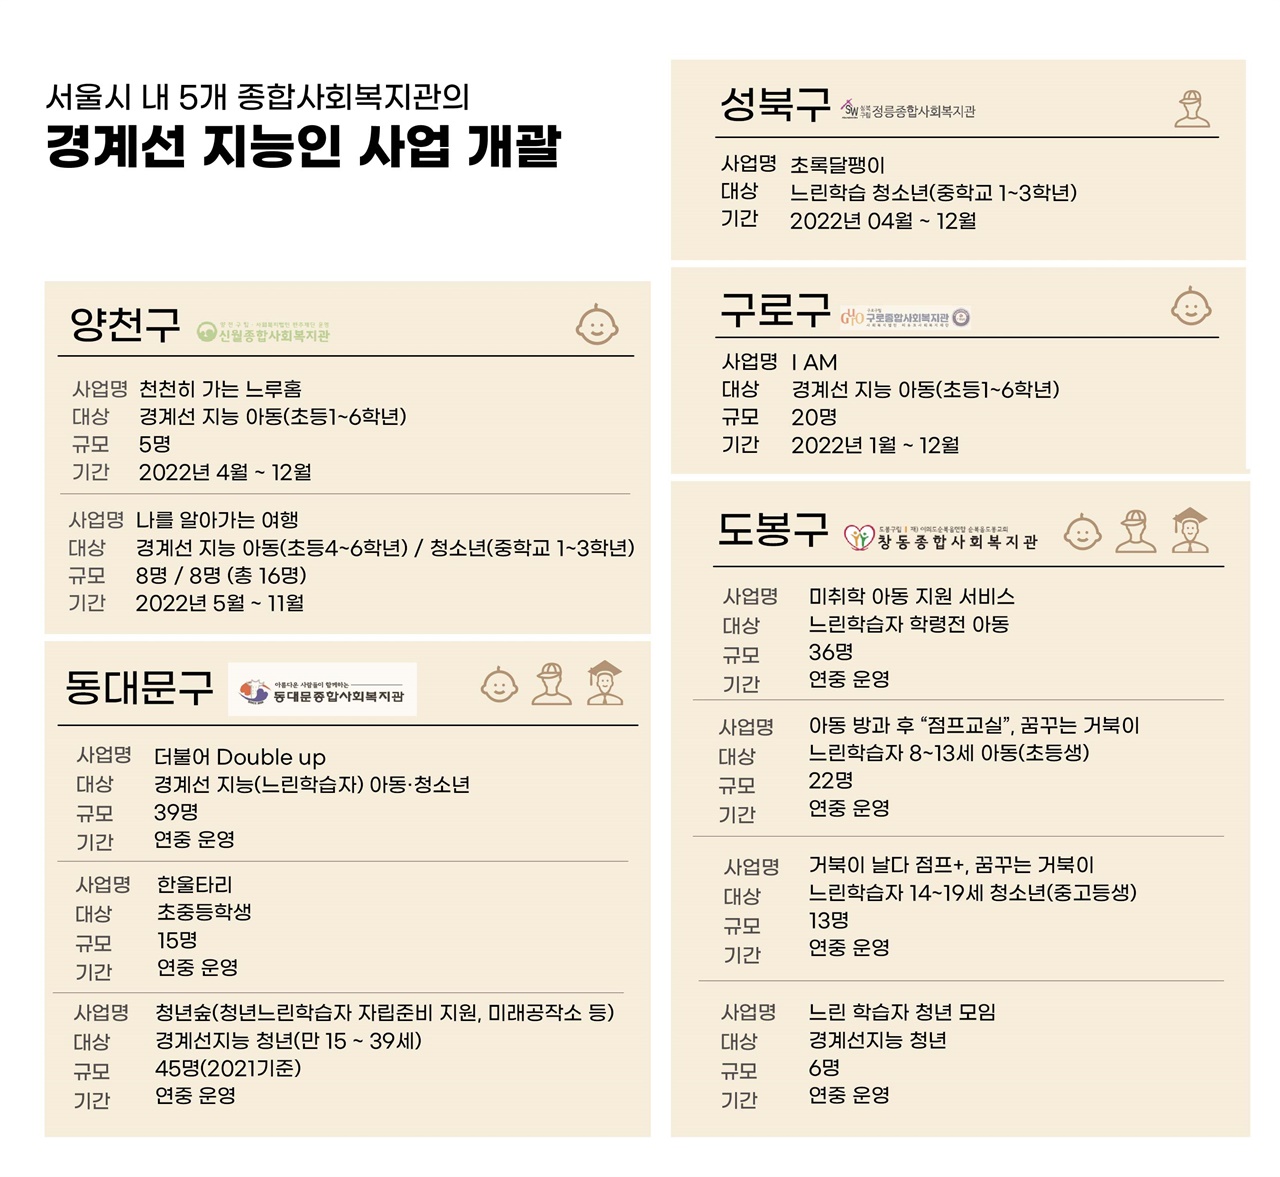 2022년 9월 29일 기준 서울시 내 5개의 종합복지관 경계선 지능 사업 개괄